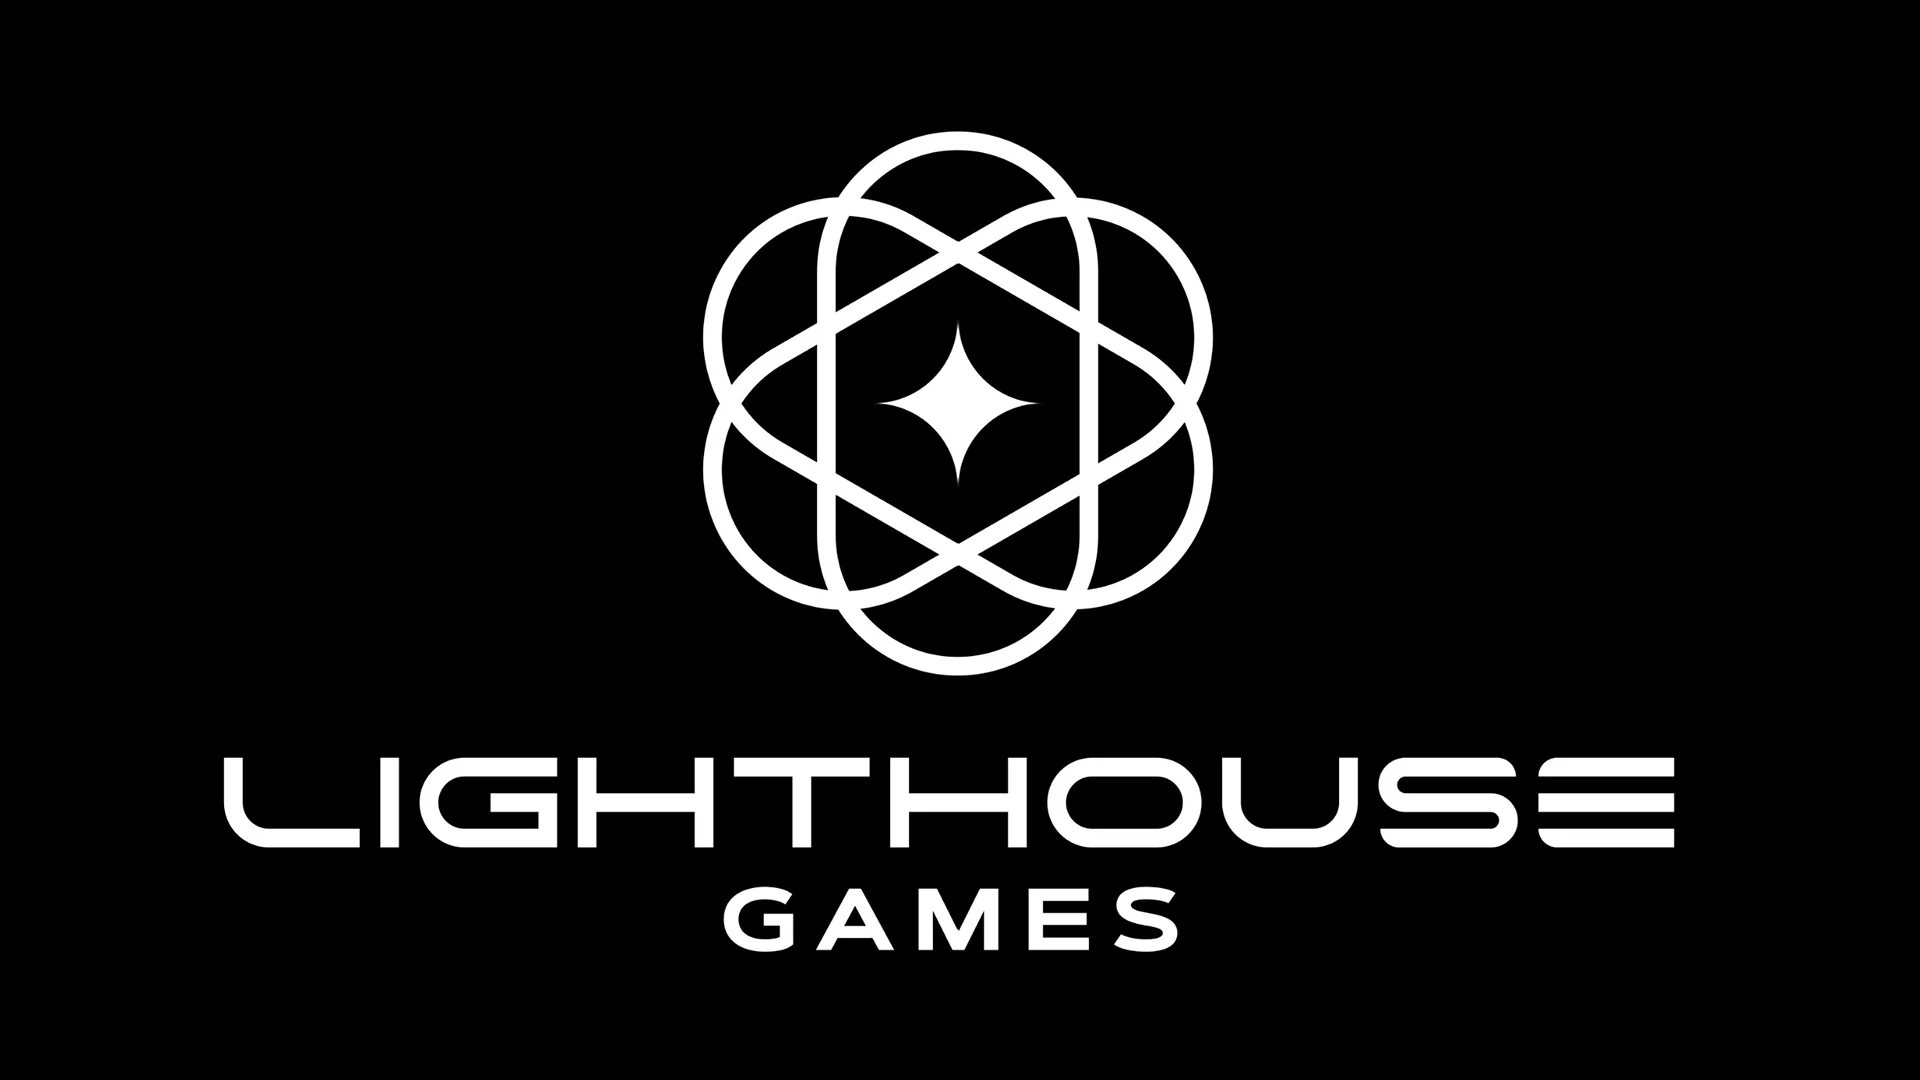 Lighthouse Games, nowe studio założyciela Playground Games, otrzymało znaczącą inwestycję od chińskiej firmy Tencent